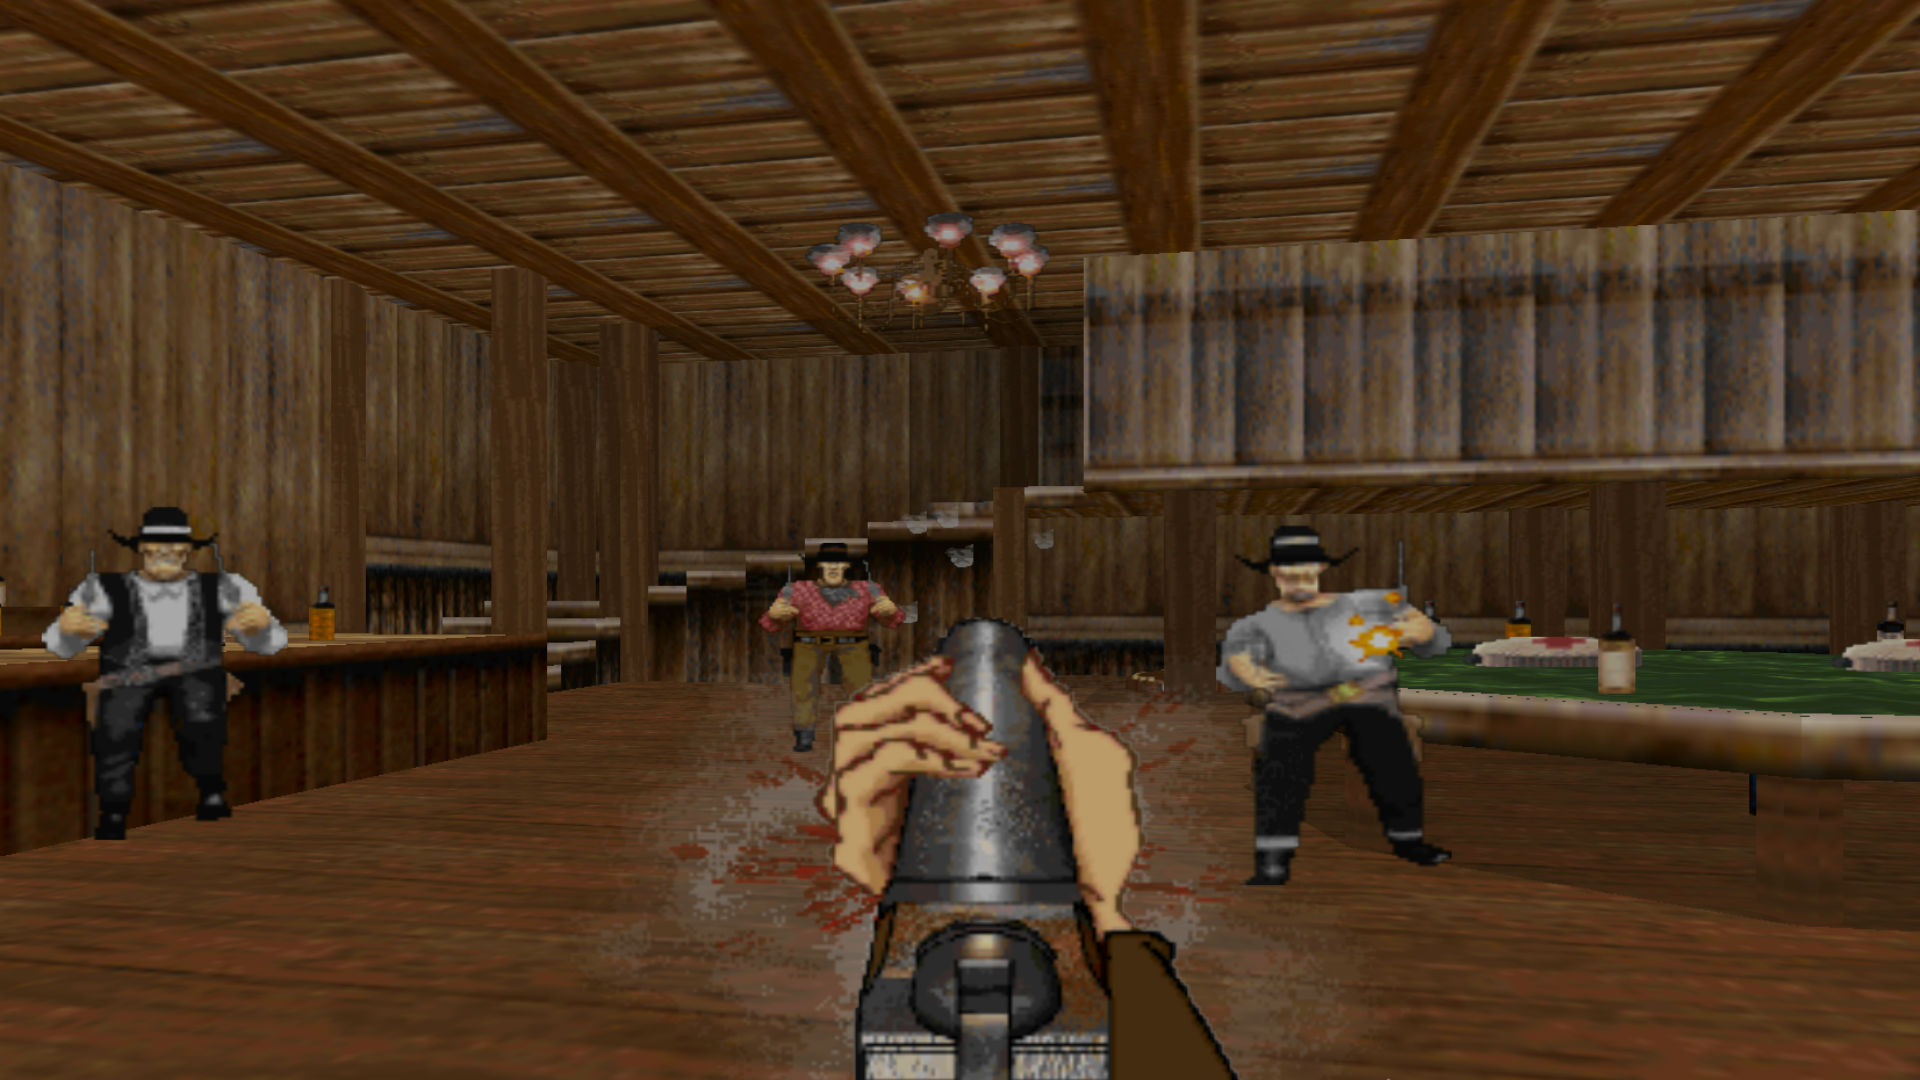 En shootout i en bar i forbud, et af de bedste gamle spil